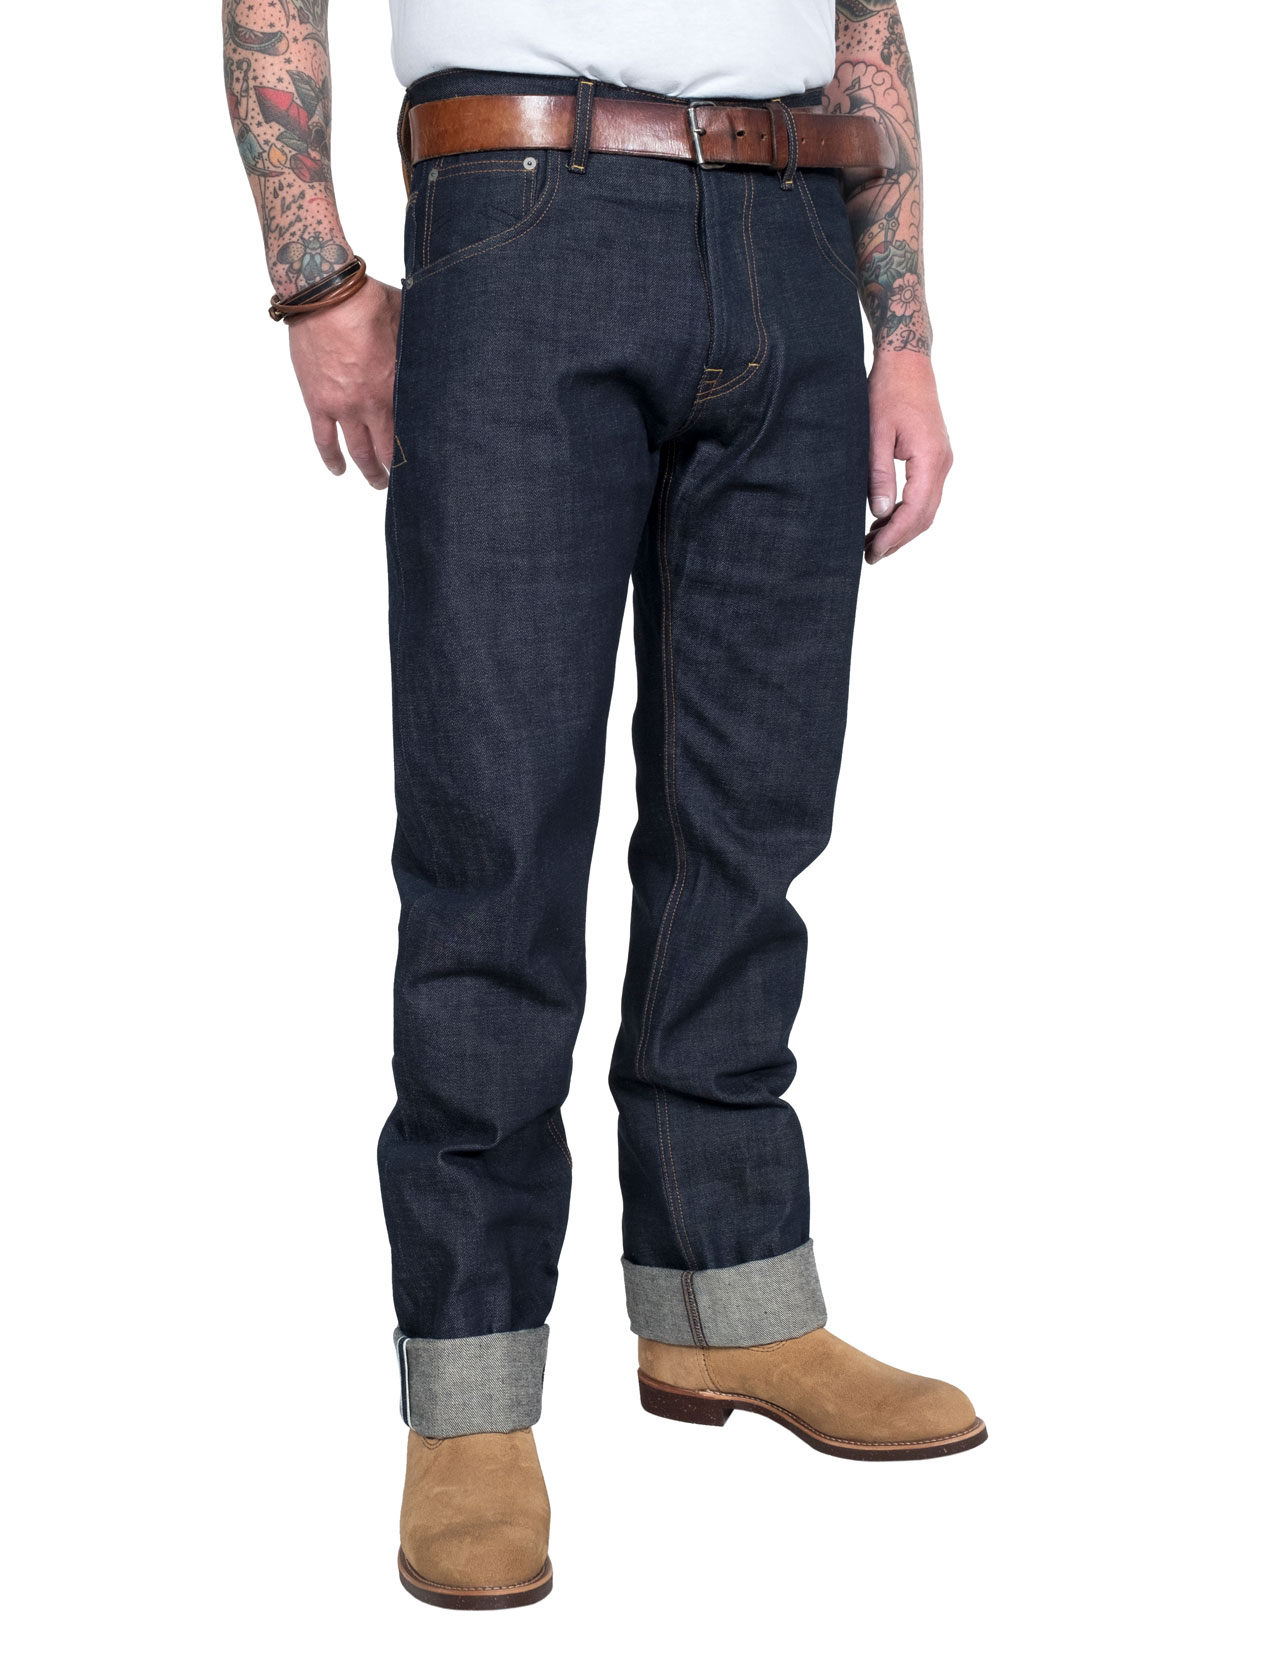 eat-dust-fit-67-raw-denim-jeans-01